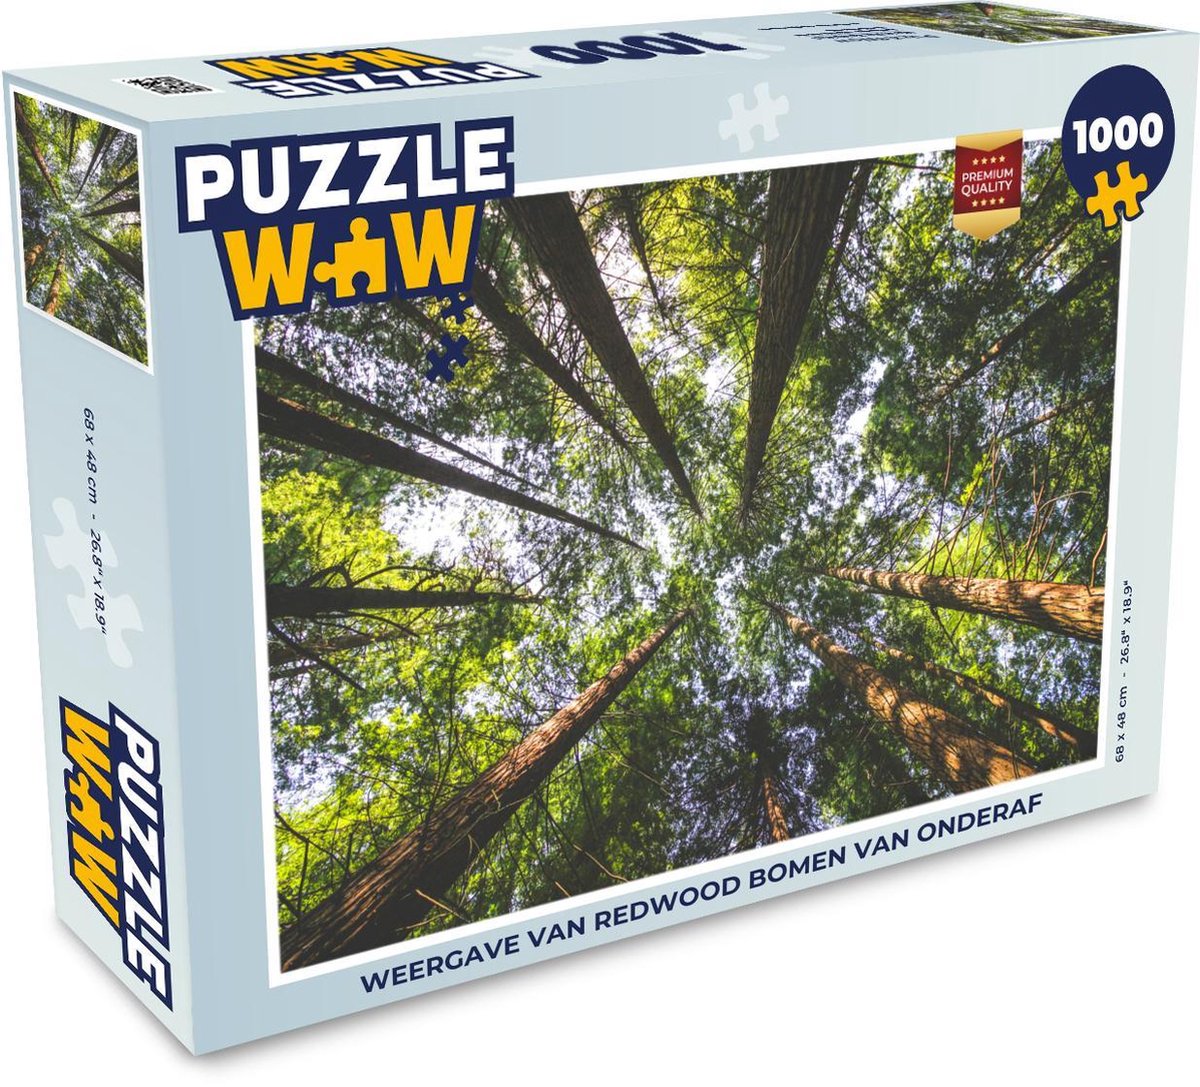 Afbeelding van product Puzzel 1000 stukjes volwassenen Redwood 1000 stukjes - Weergave van Redwood bomen van onderaf - PuzzleWow heeft +100000 puzzels